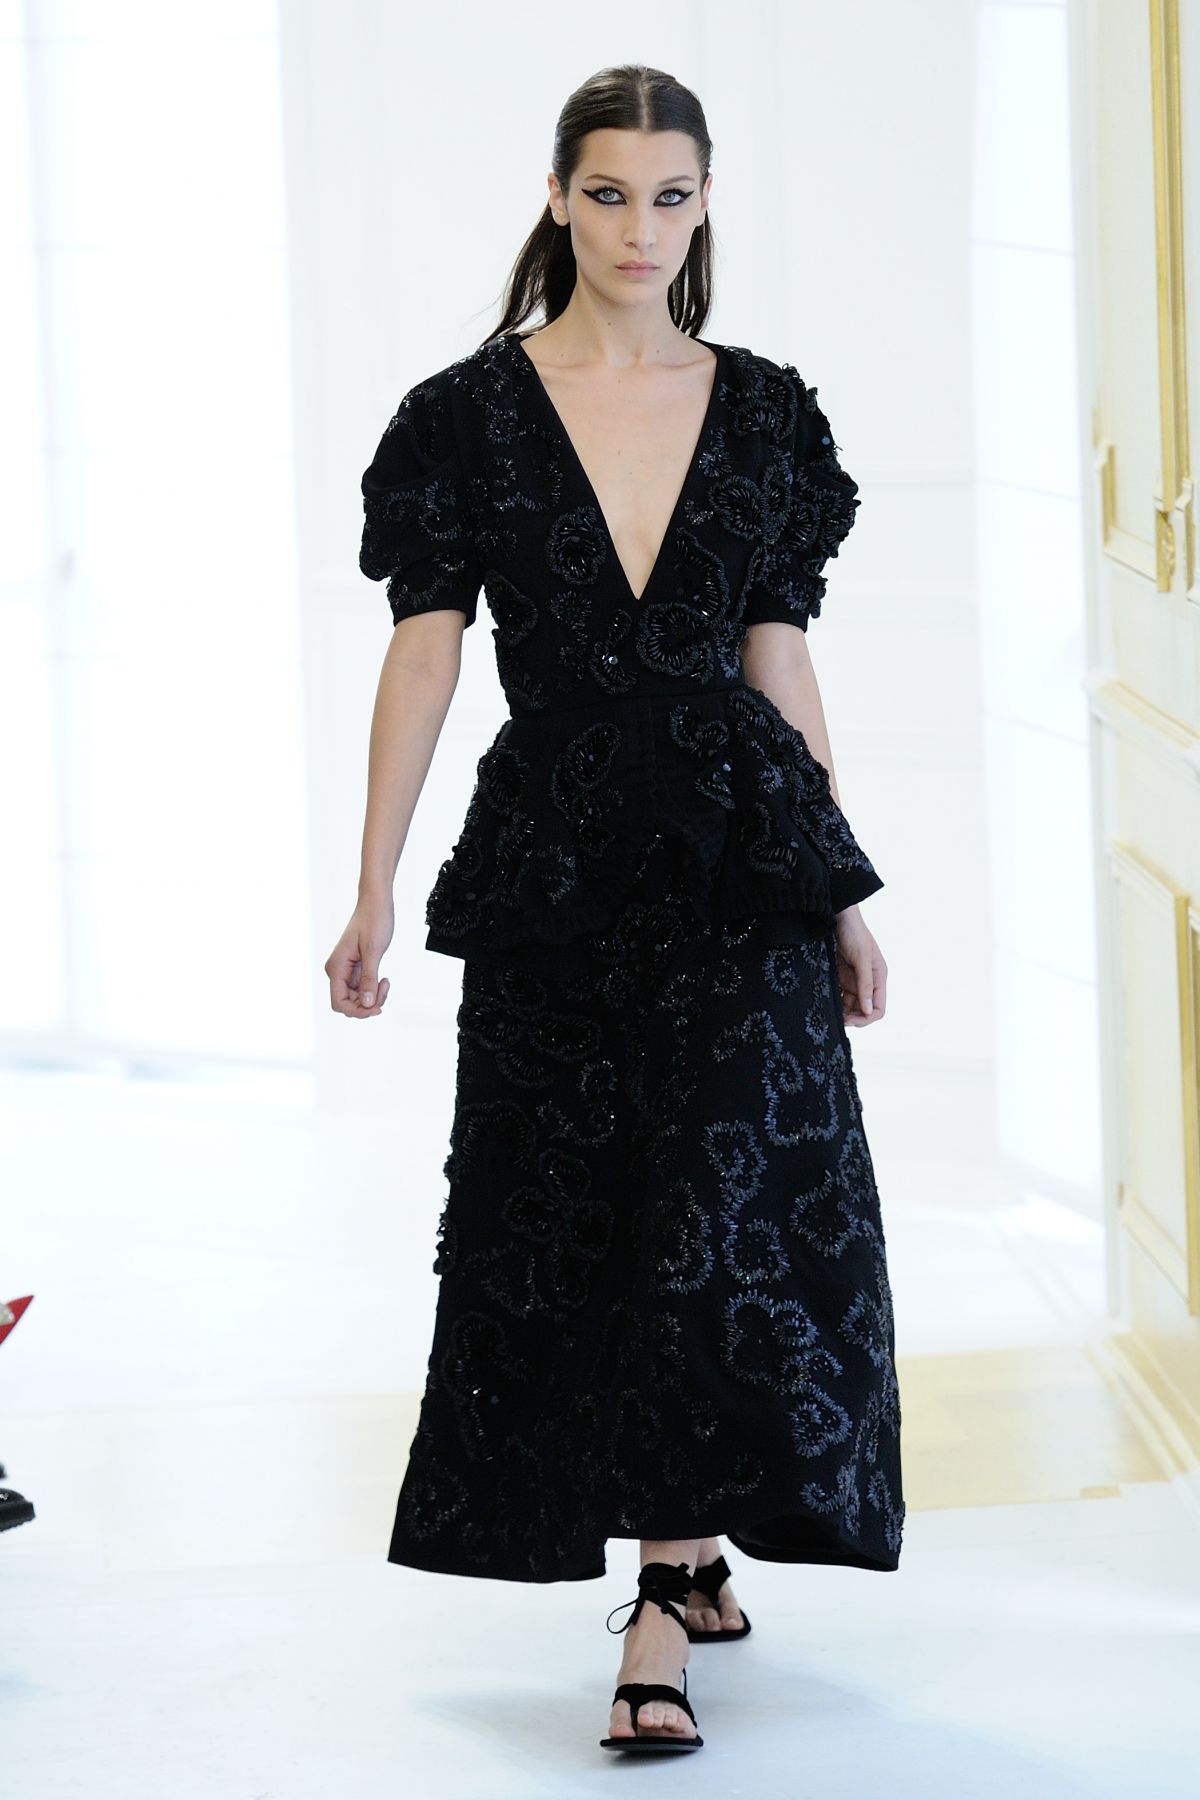 BELLA HADID Walks the Runway at Christian Dior Fashion Show at Paris ...